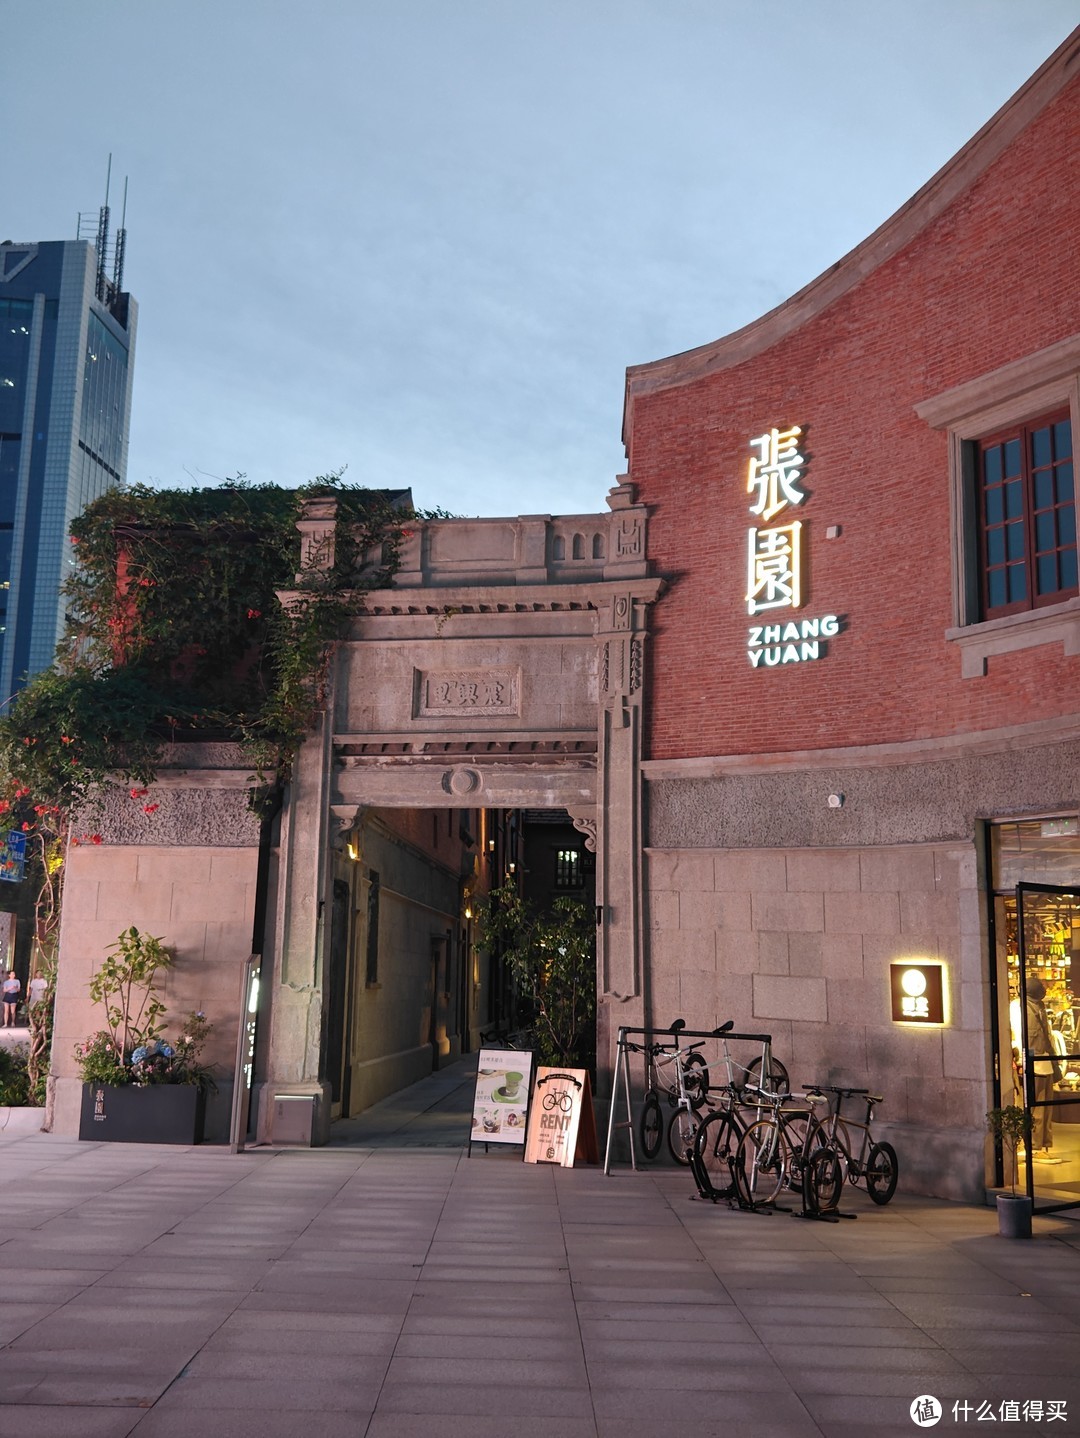 线下探店之自行车主题餐厅：位于上海张园的RE而意自行车厨房，让我们边吃边破风吧